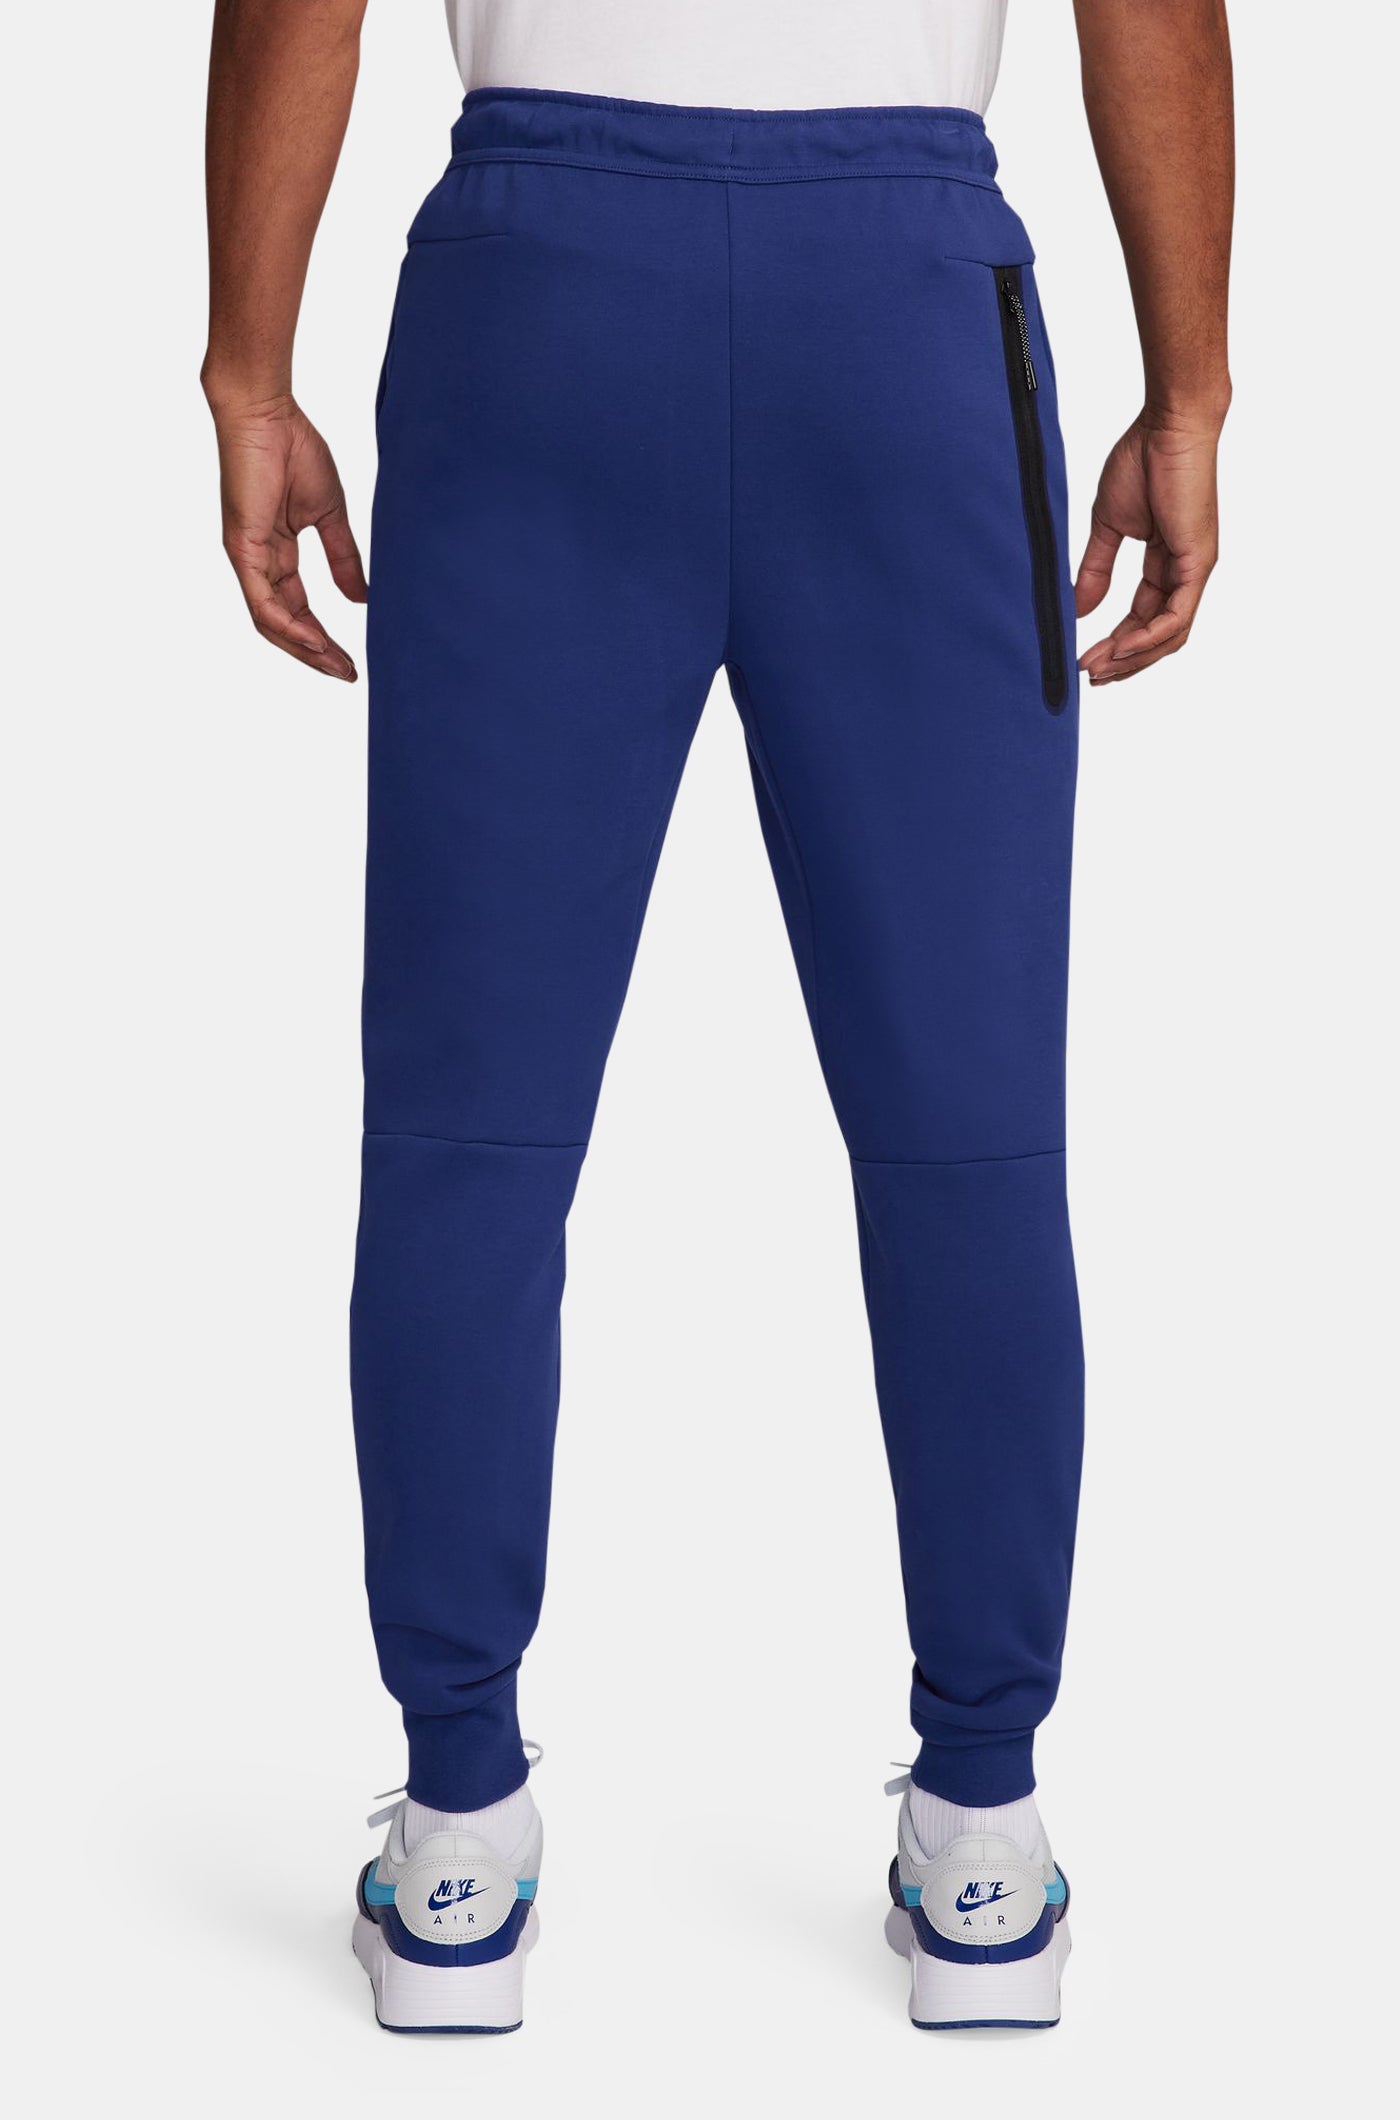 Pantaló tech blau royal Barça Nike